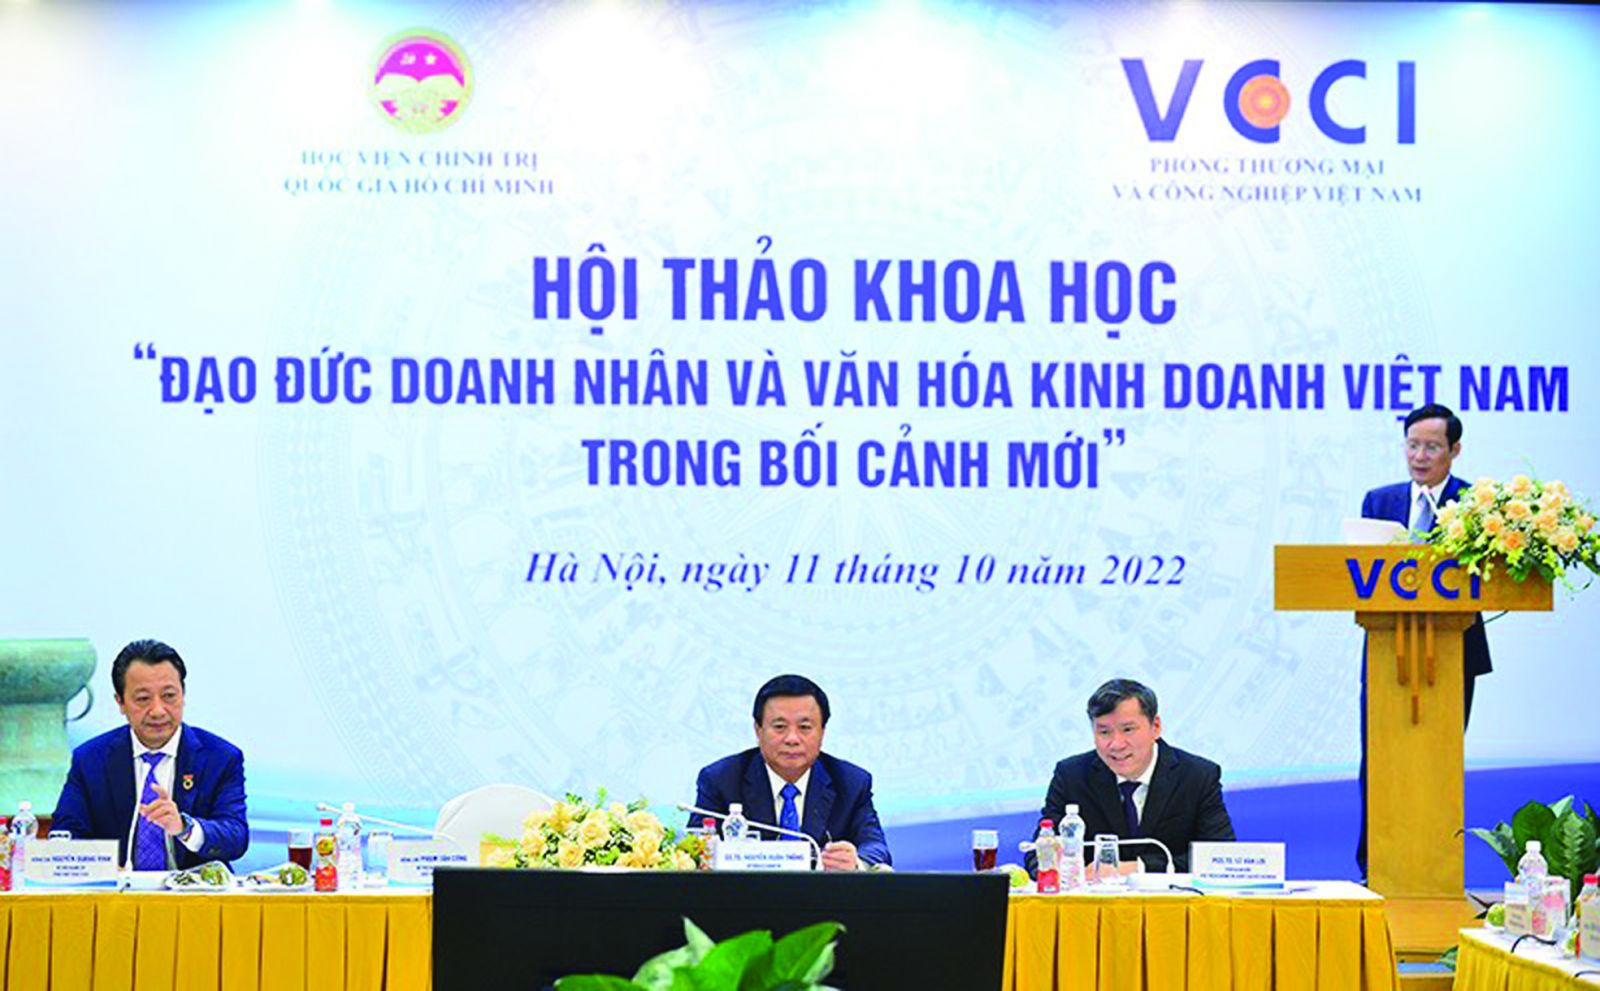  Hội thảo khoa học “Đạo đức doanh nhân và văn hoá kinh doanh Việt Nam trong bối cảnh mới” do VCCI phối hợp cùng Học viện Chính trị Quốc gia Hồ Chí Minh tổ chức.